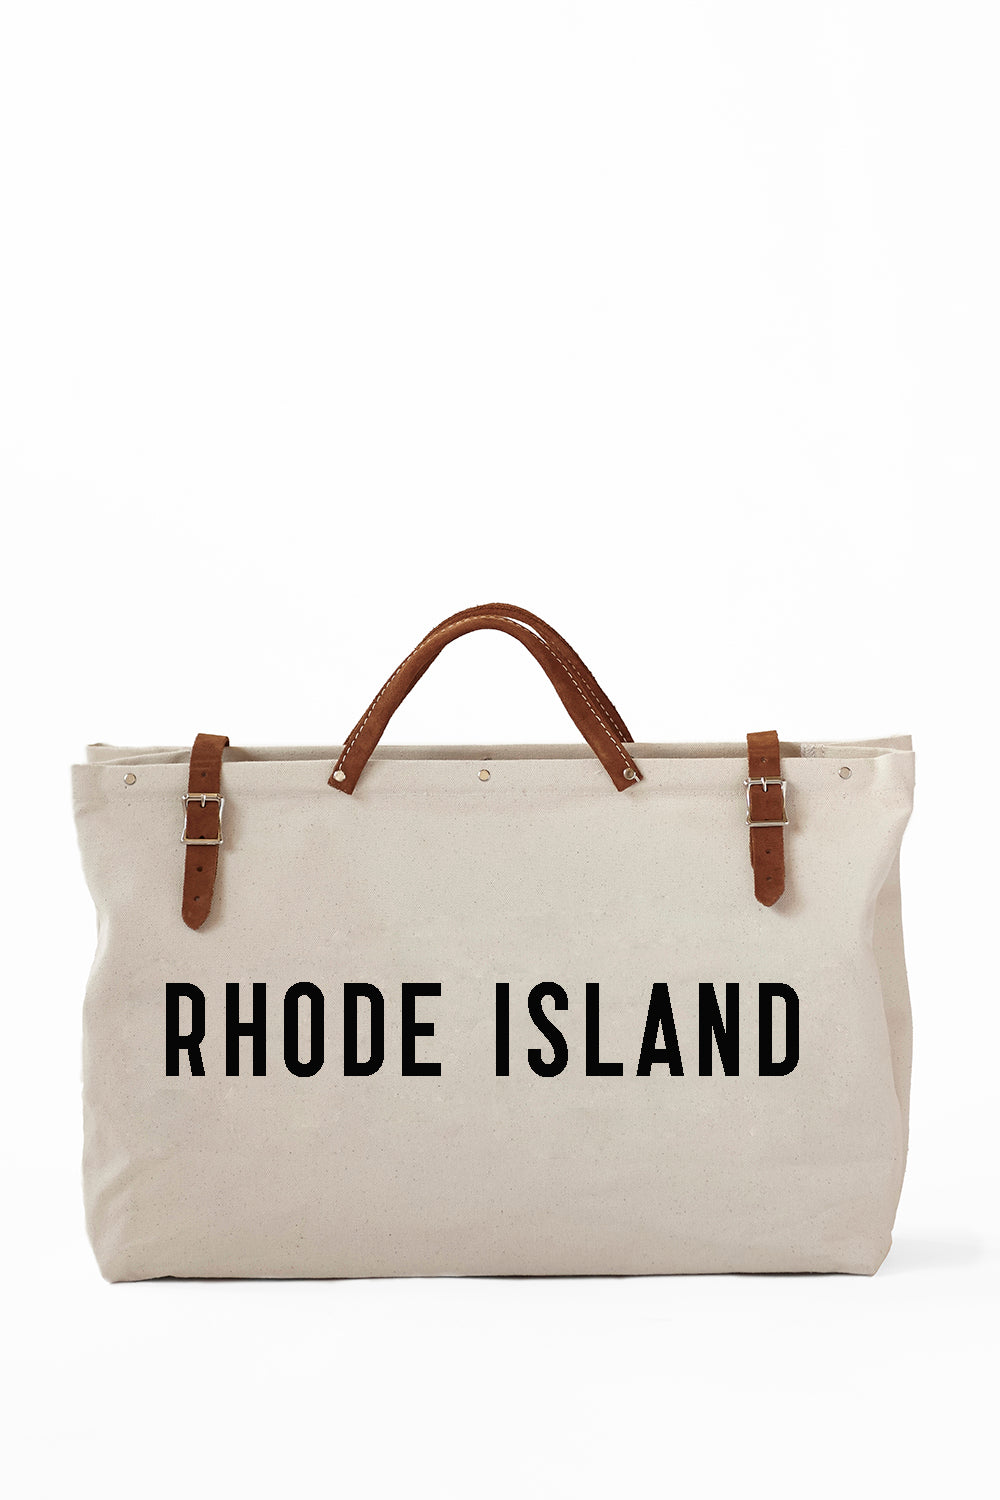 Rhode Island Utility Bag